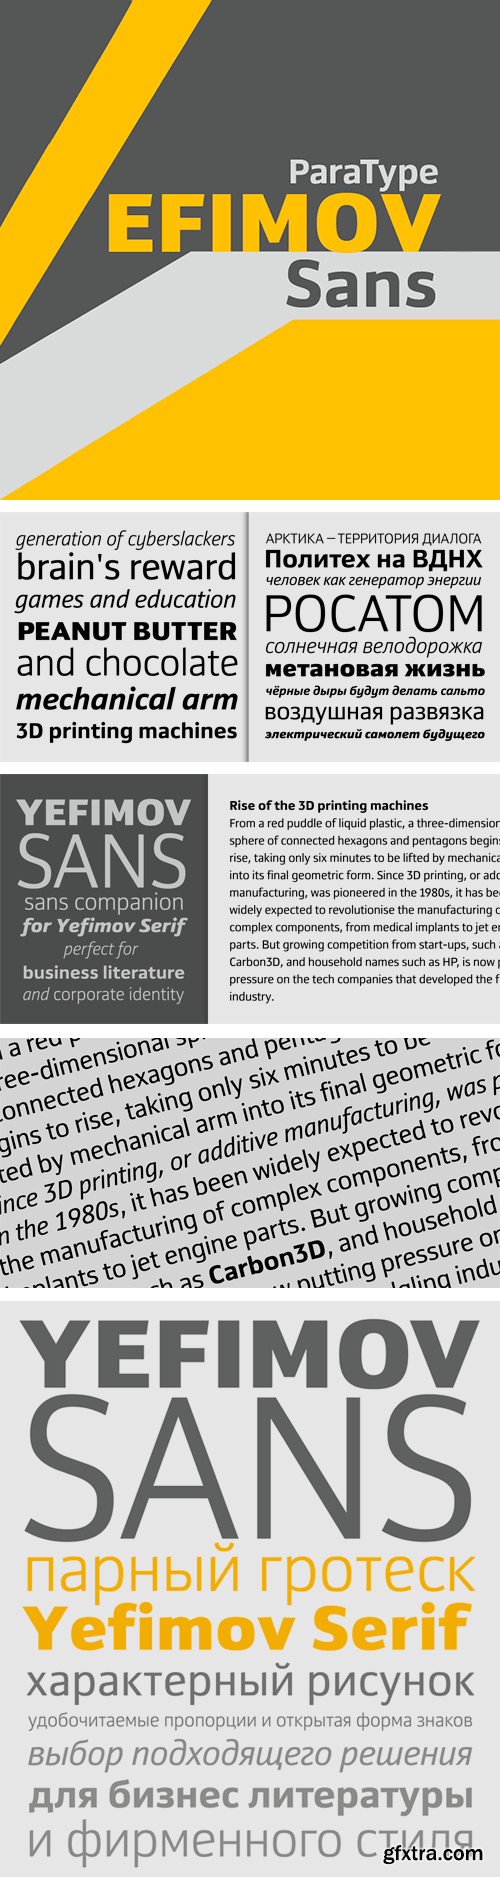 Yefimov Sans Font Family